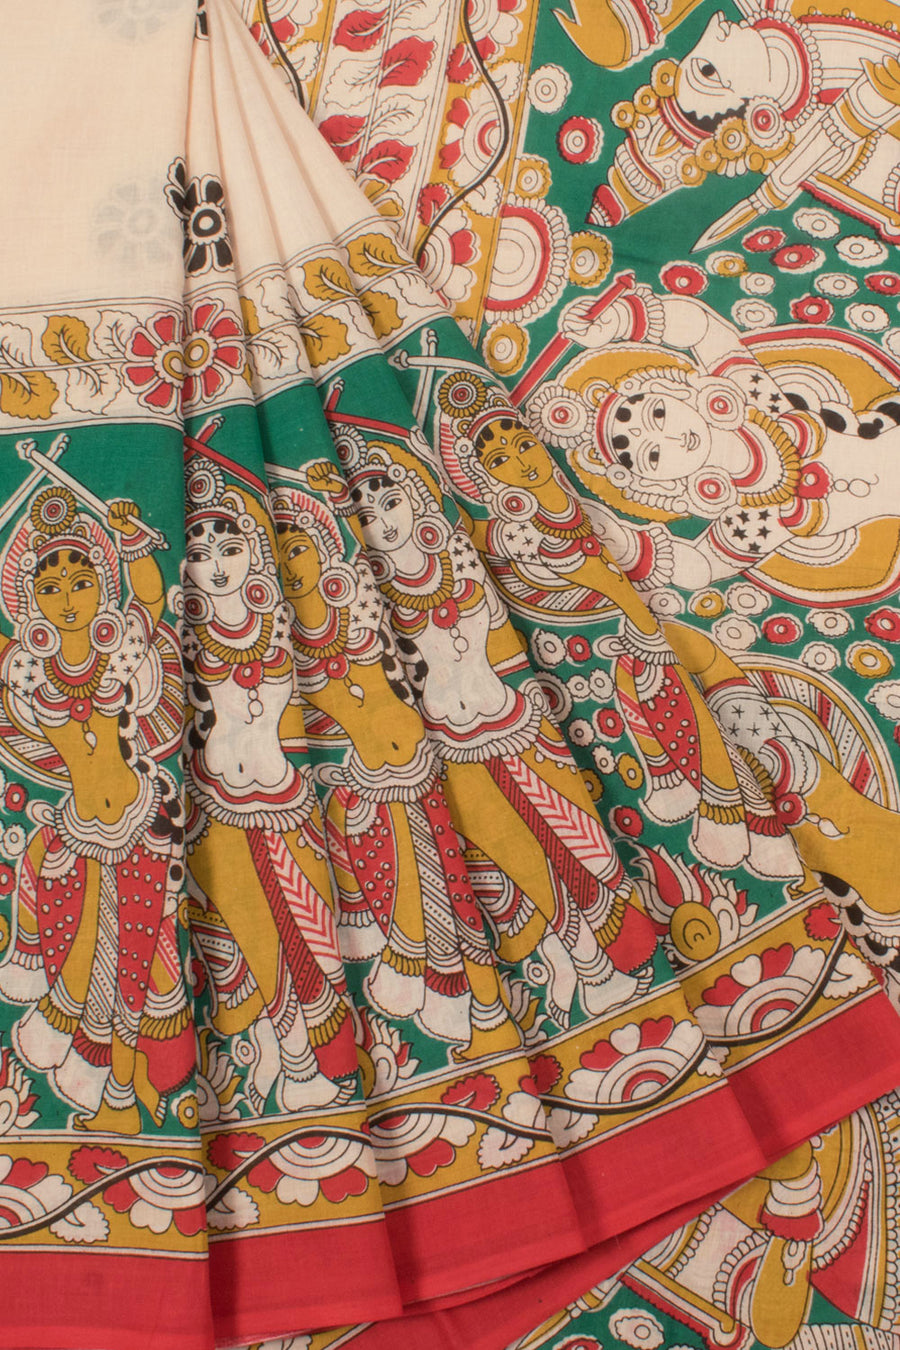 Printed Kalamkari Cotton Saree with Dancing Girl Motifs